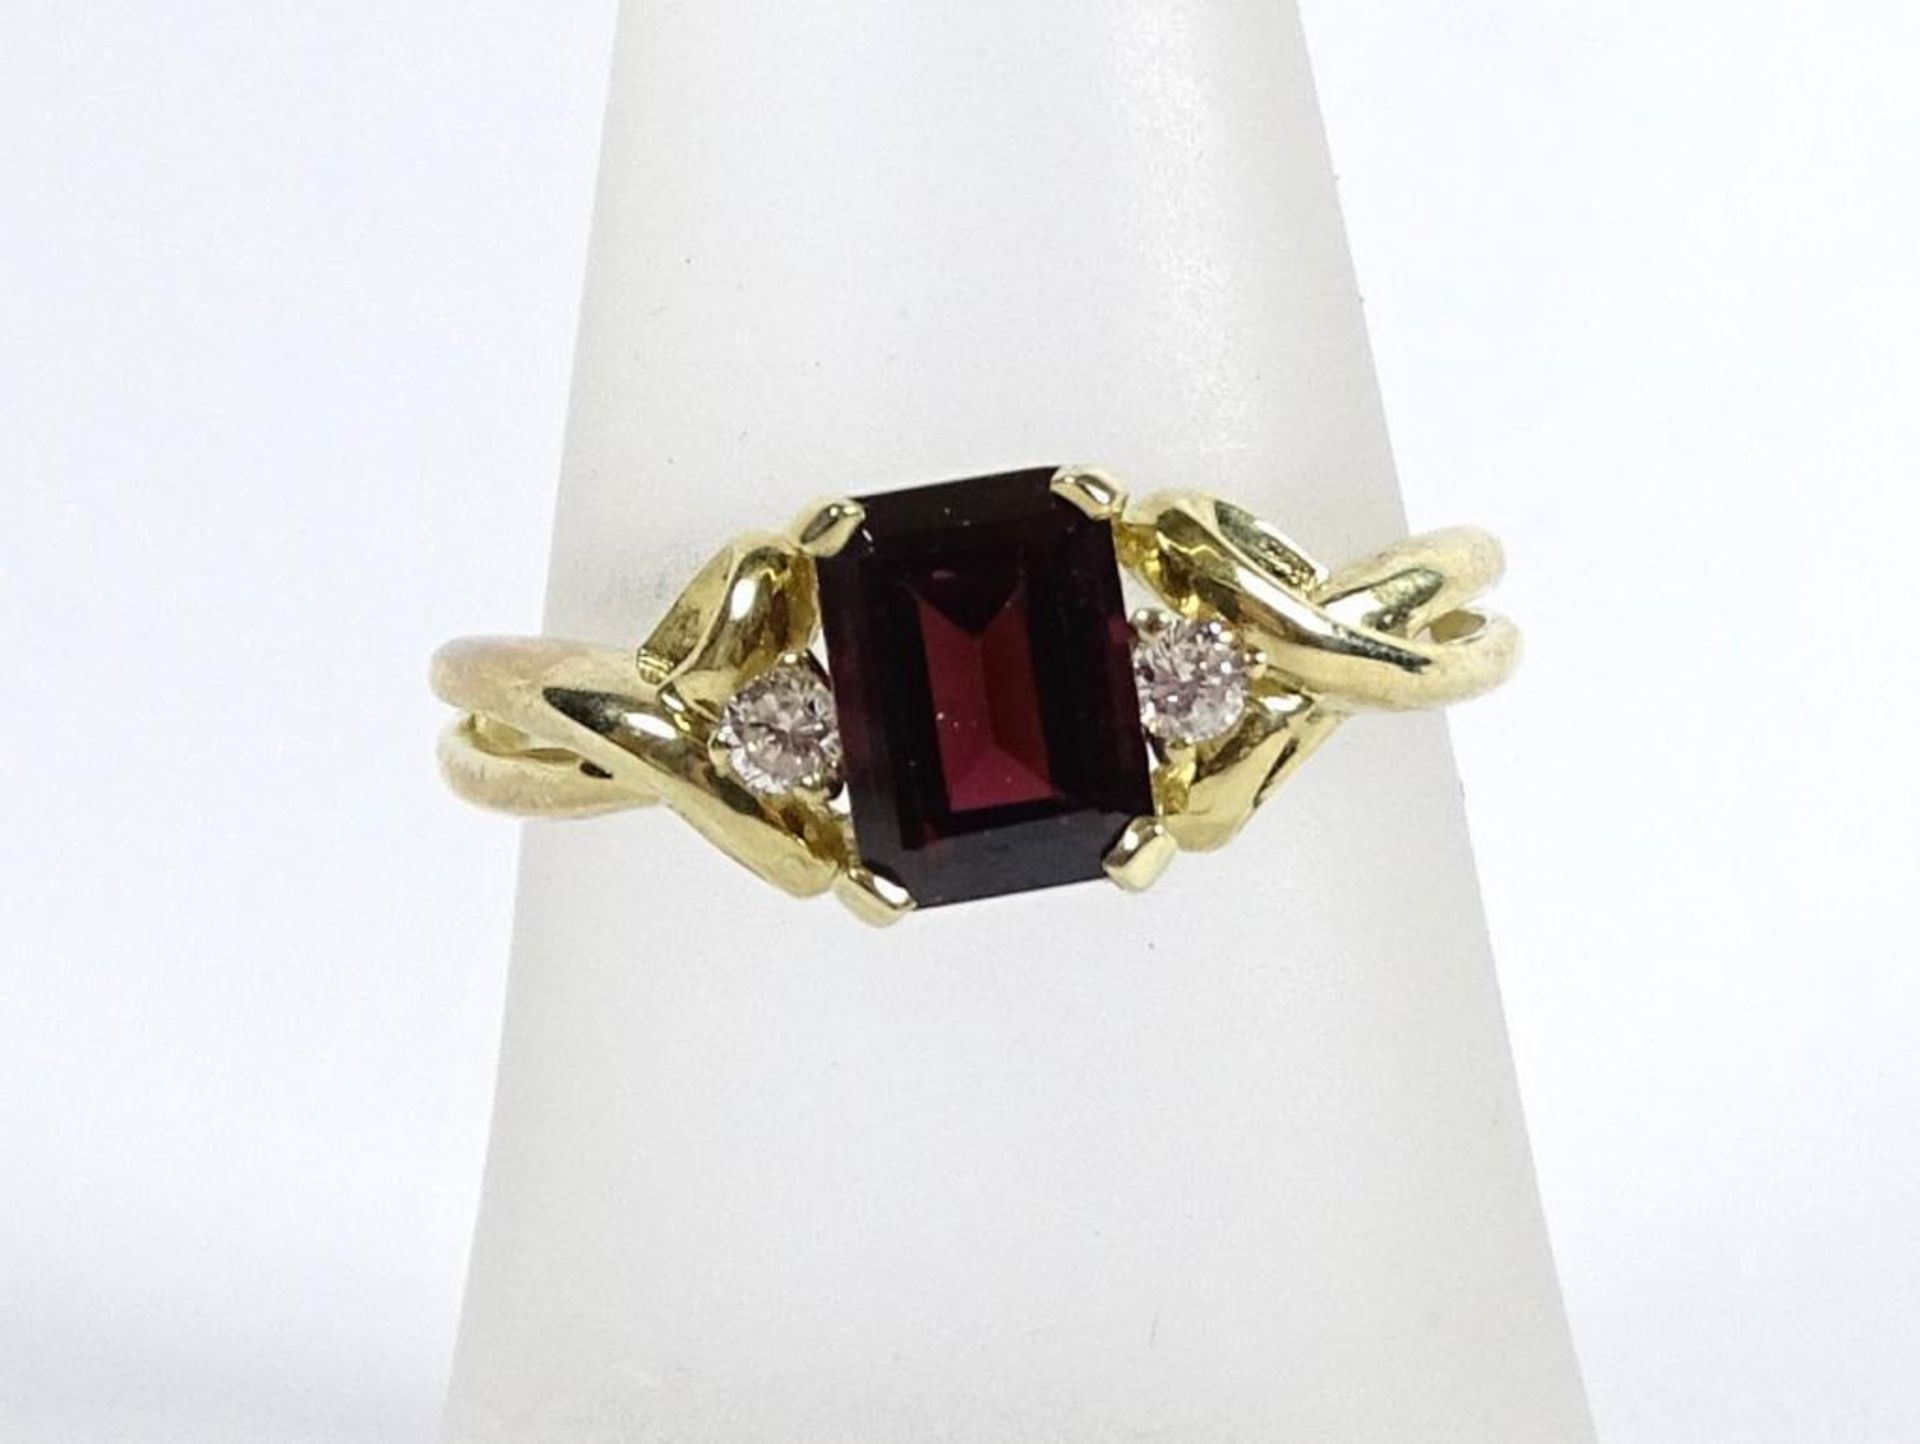 Goldring 375/000 mit Granat und Diamanten,RG 53/54 2,5 Gramm,Juweliersauflösung-Ungetragene Ware /